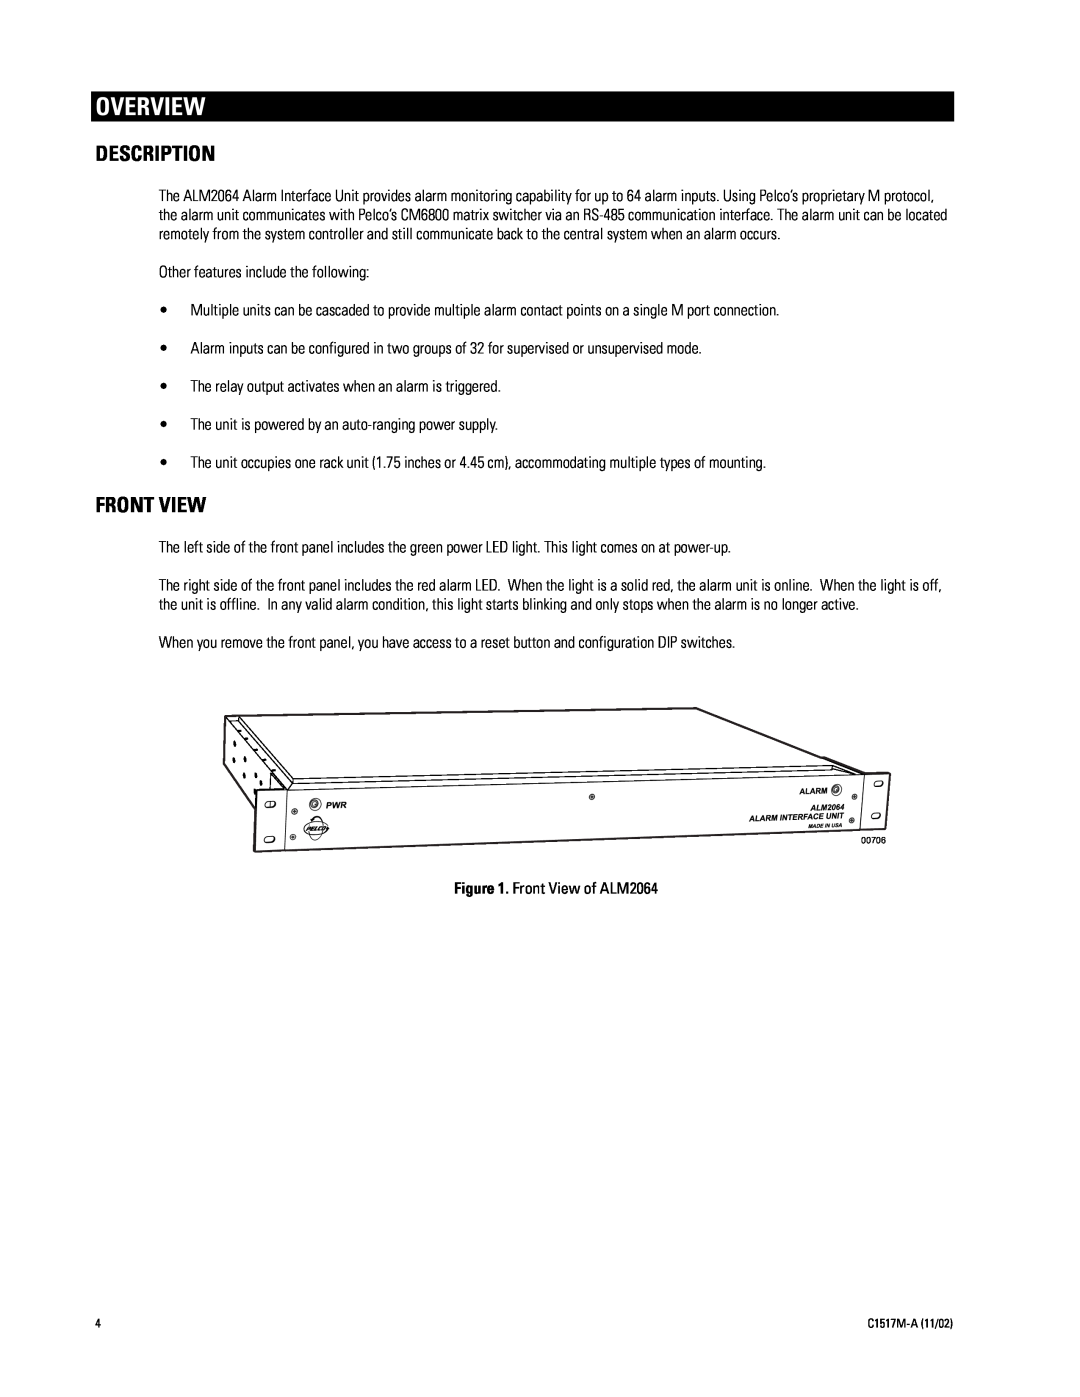 Pelco ALM2064 manual Overview, Description, Front View 